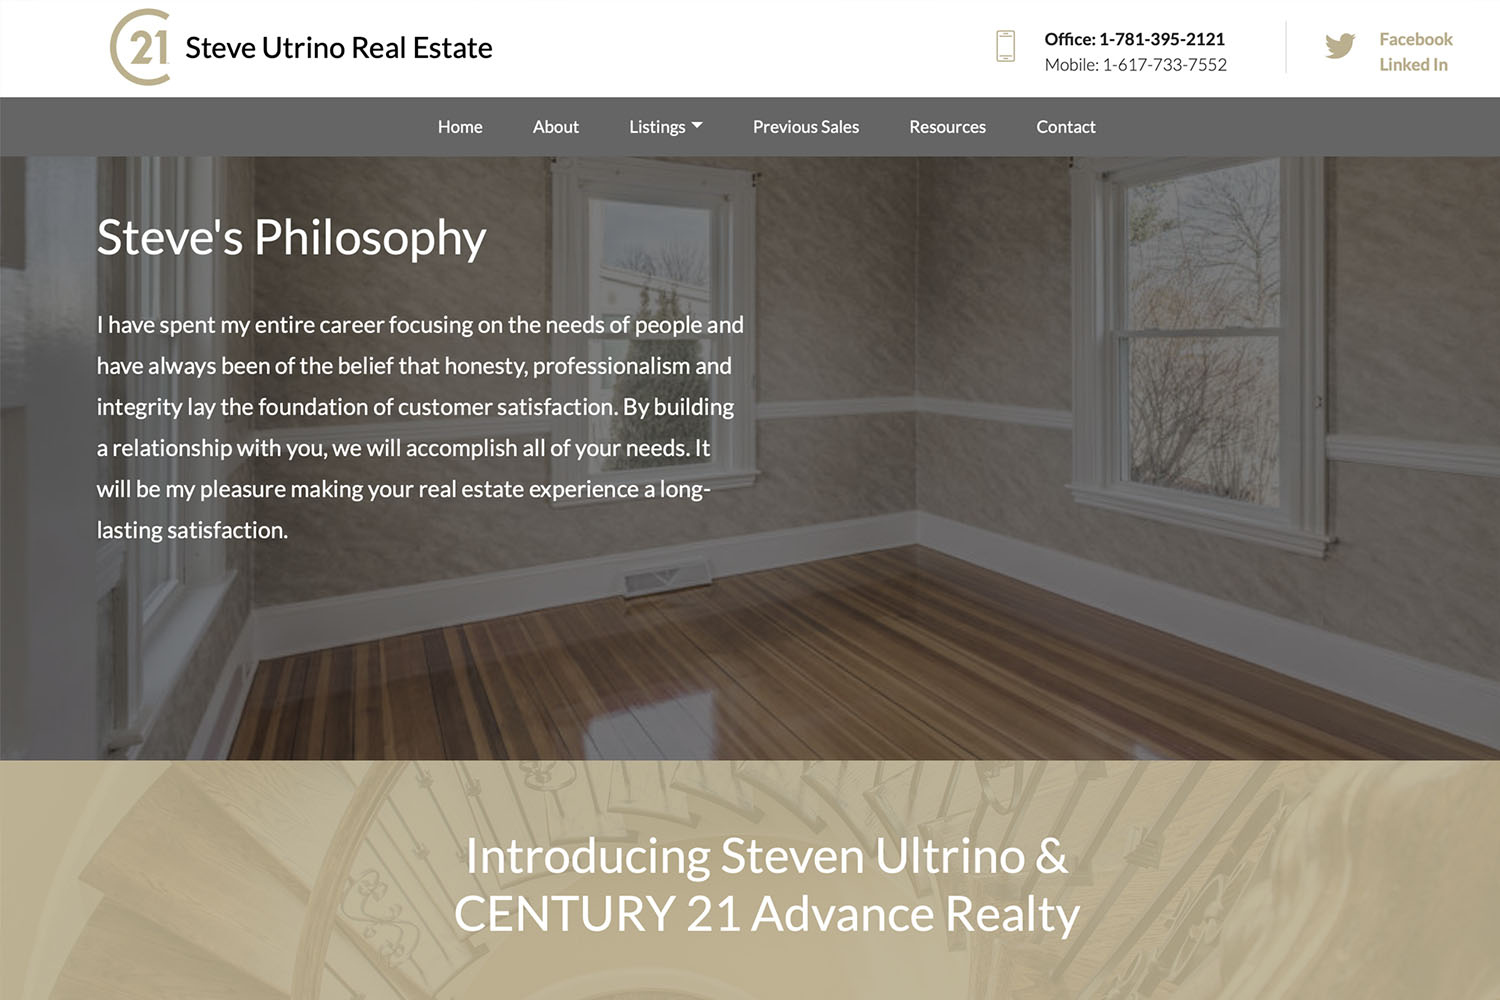 Steven Ultrino Real Estate